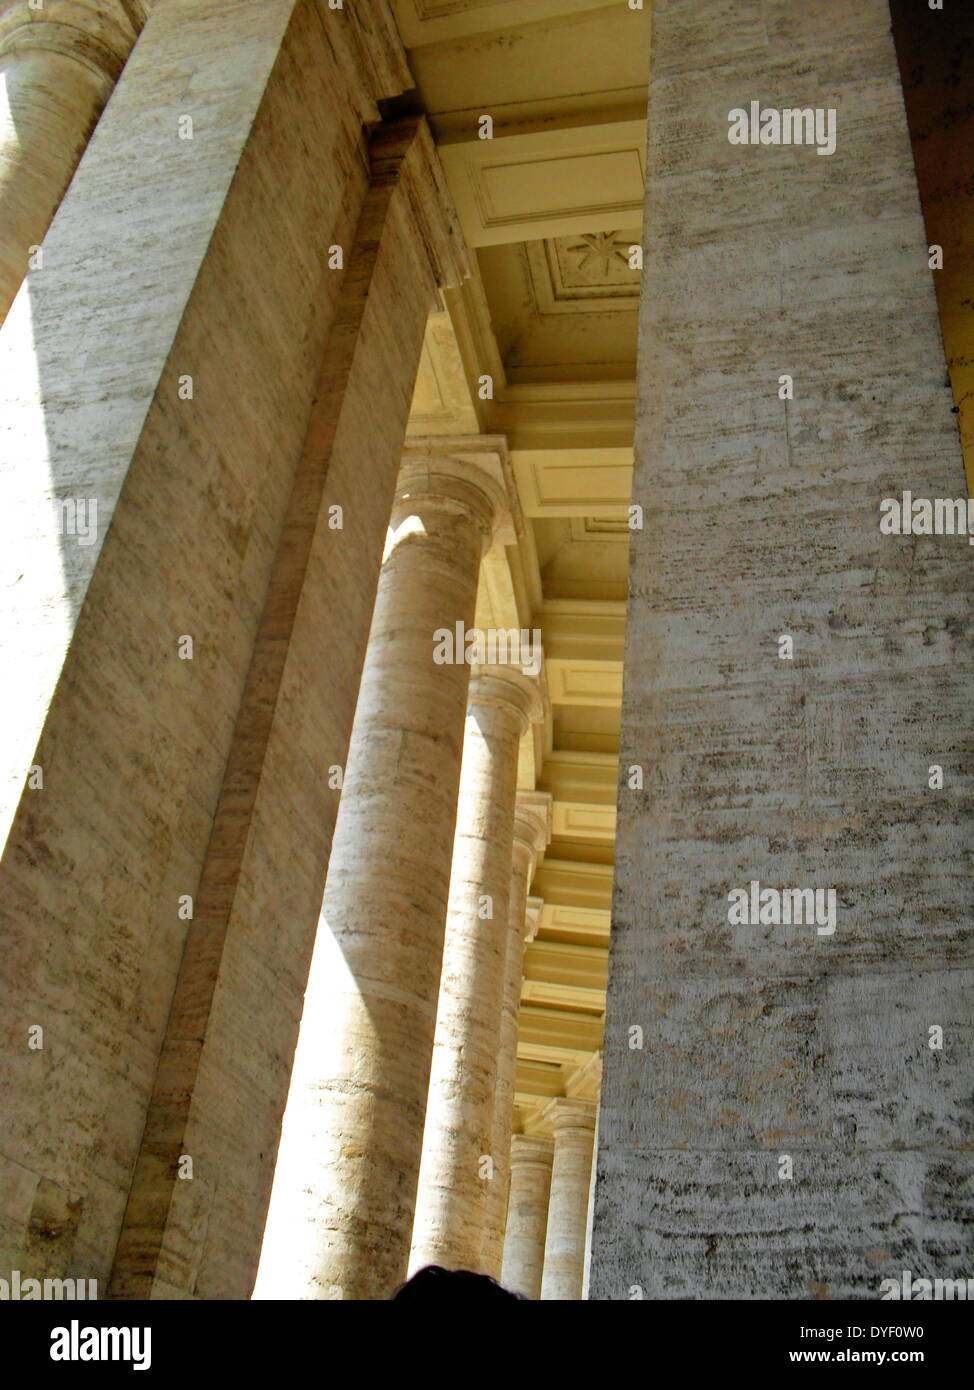 Dettaglio della colonna nella Basilica di San Pietro in Vaticano, Italia. La chiesa è la più celebre opera di architettura rinascimentale ed è stato progettato da Donato Bramante, Michelangelo, Carlo Maderno e Gian Lorenzo Bernini. Foto Stock